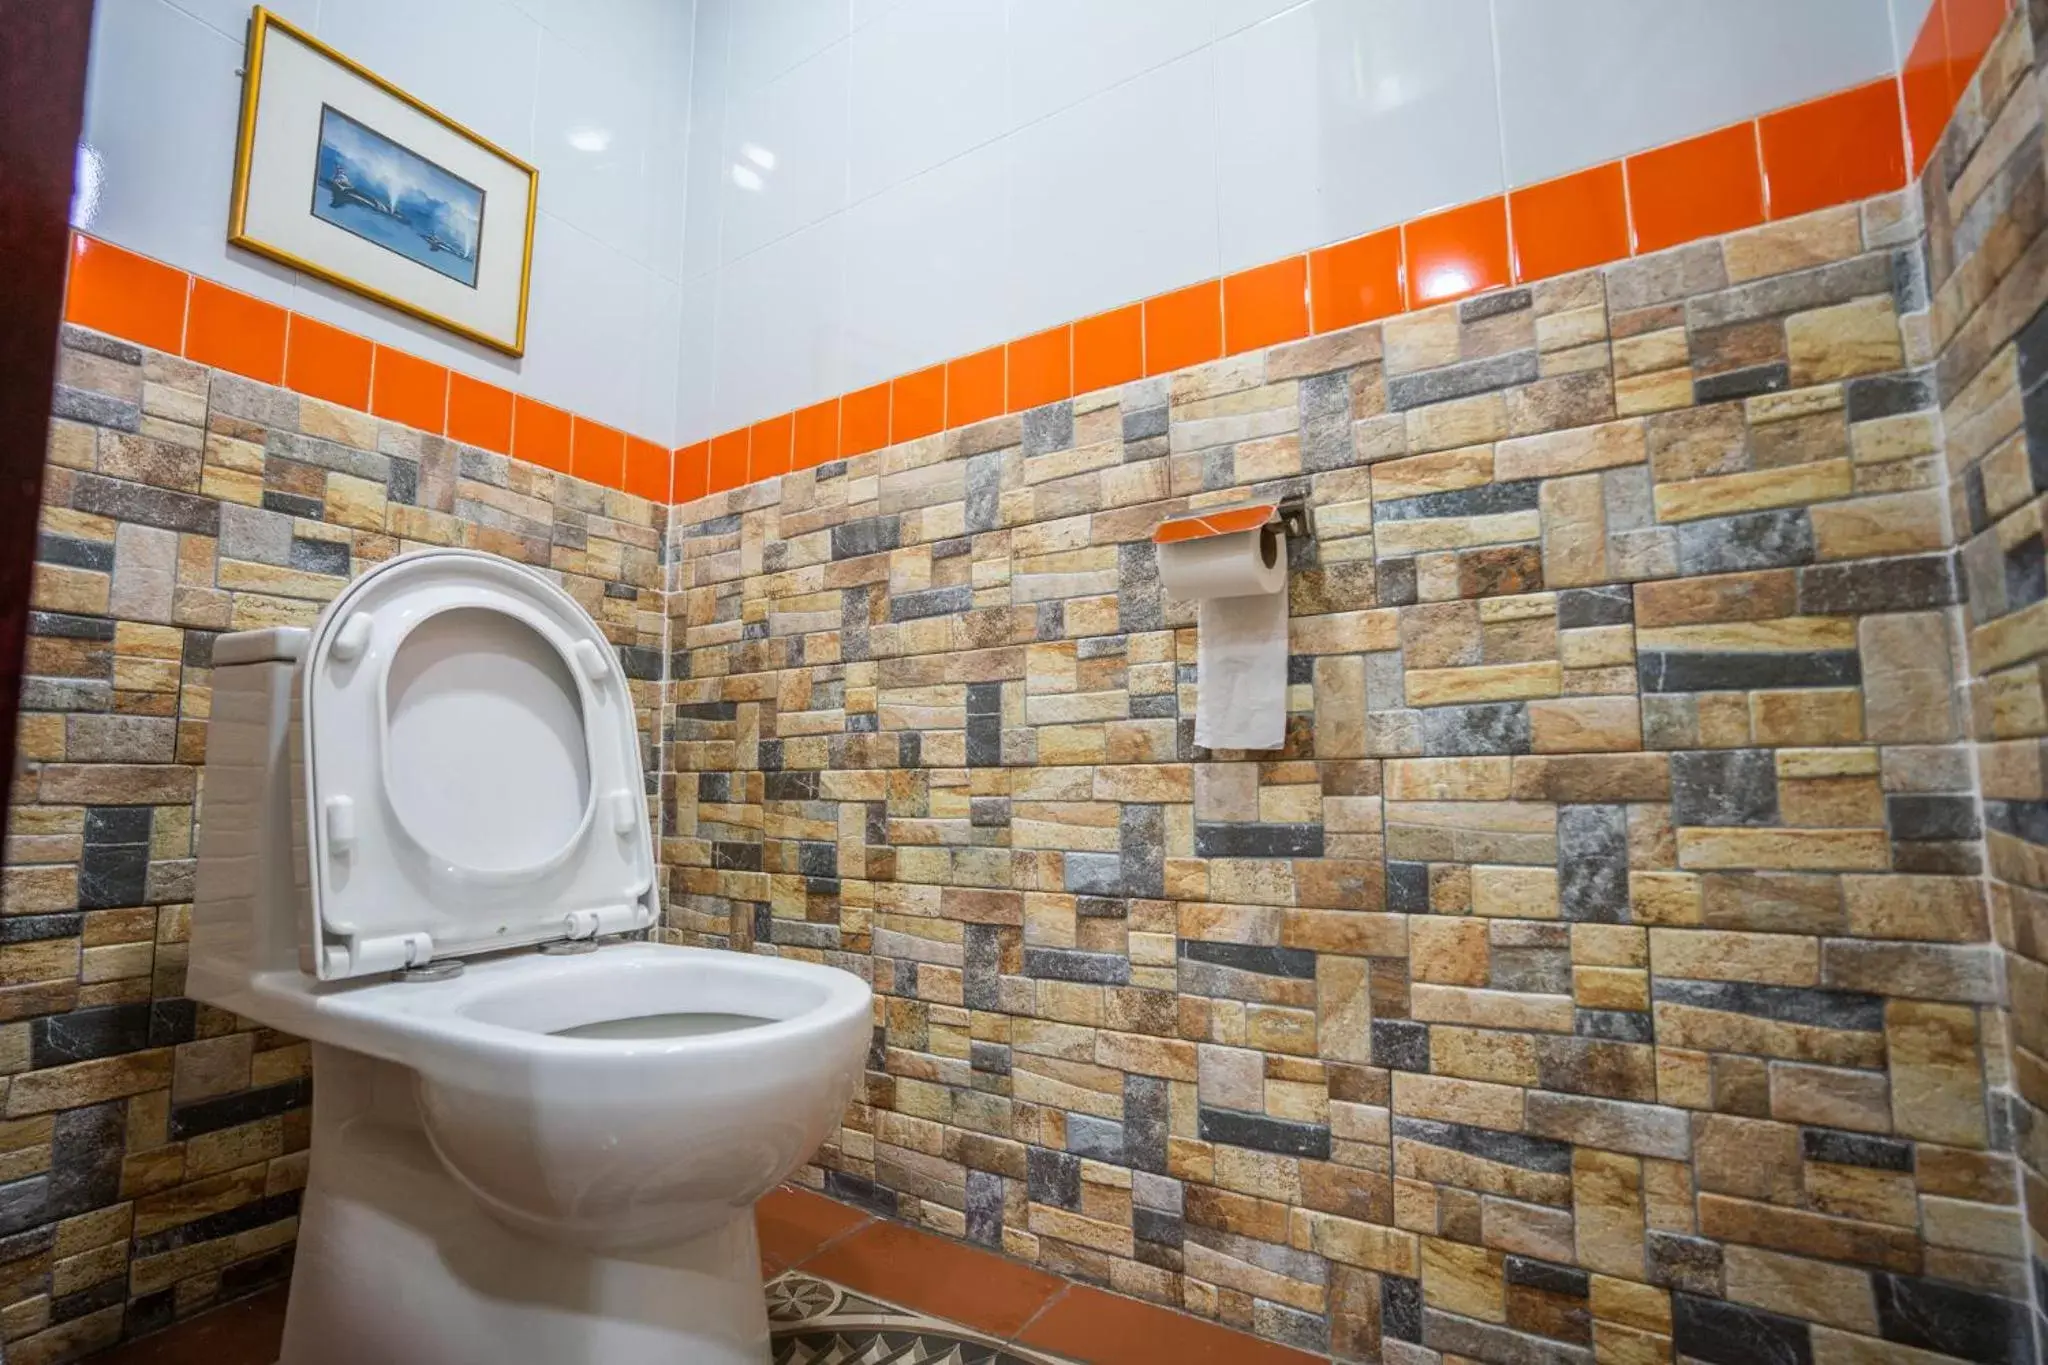 Toilet, Bathroom in Lost Paradise Resort